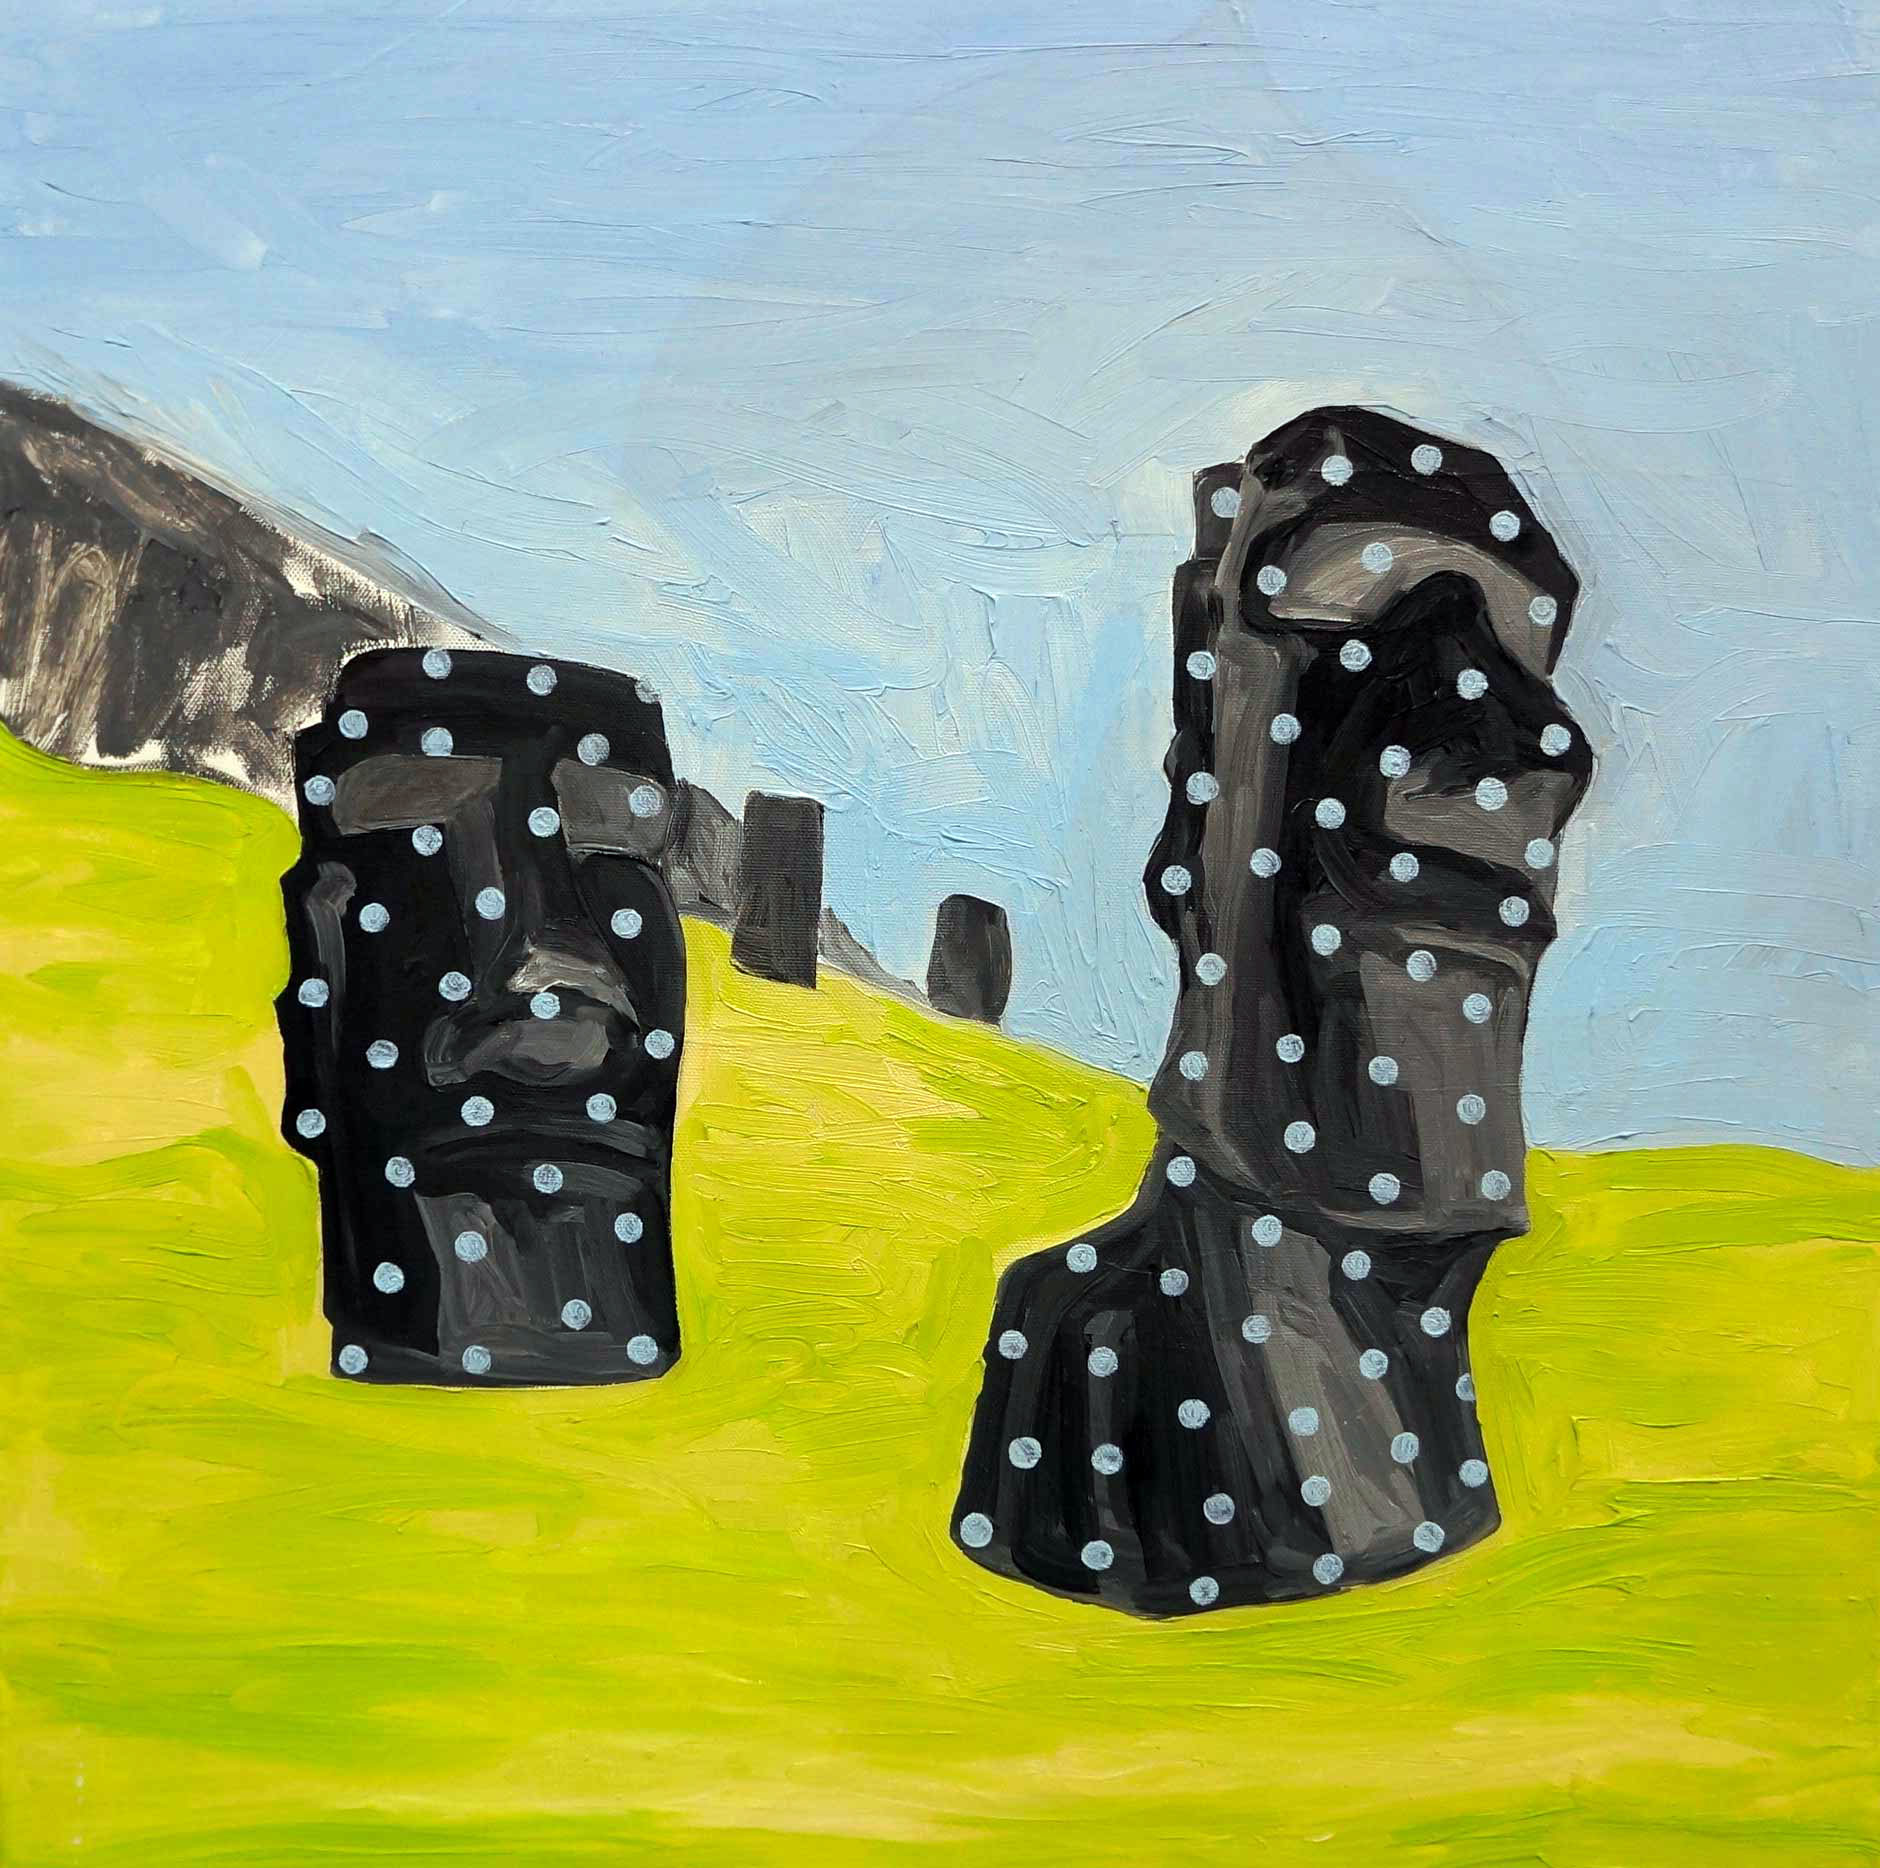 Moai Rano Raraku